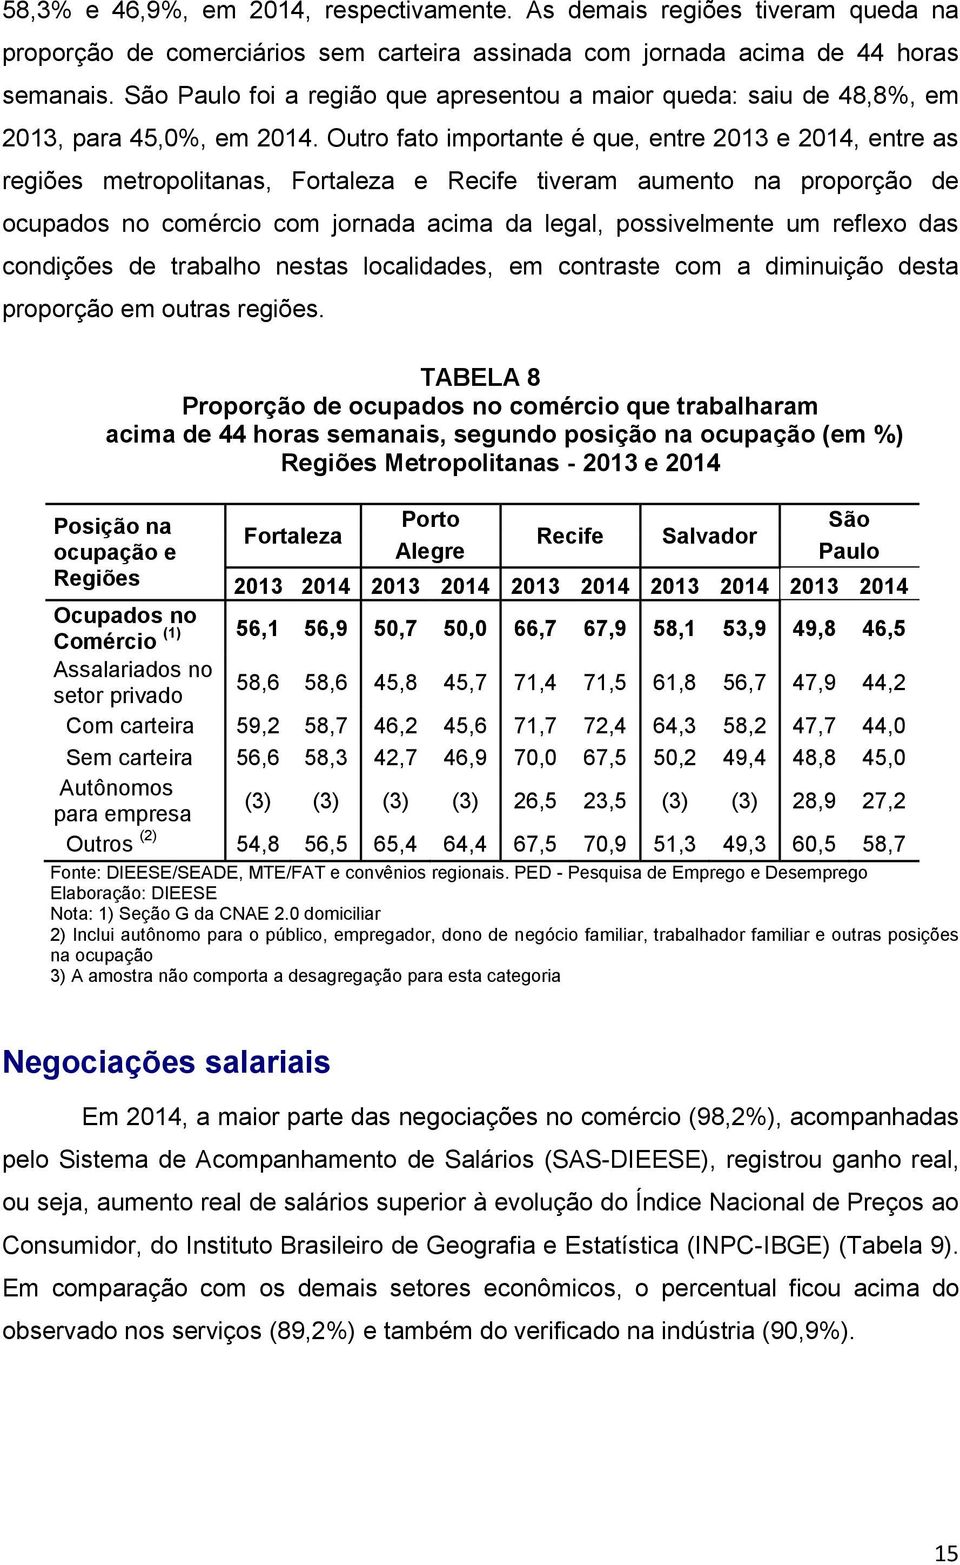 Outro fato importante é que, entre 2013 e 2014, entre as regiões metropolitanas, Fortaleza e Recife tiveram aumento na proporção de ocupados no comércio com jornada acima da legal, possivelmente um